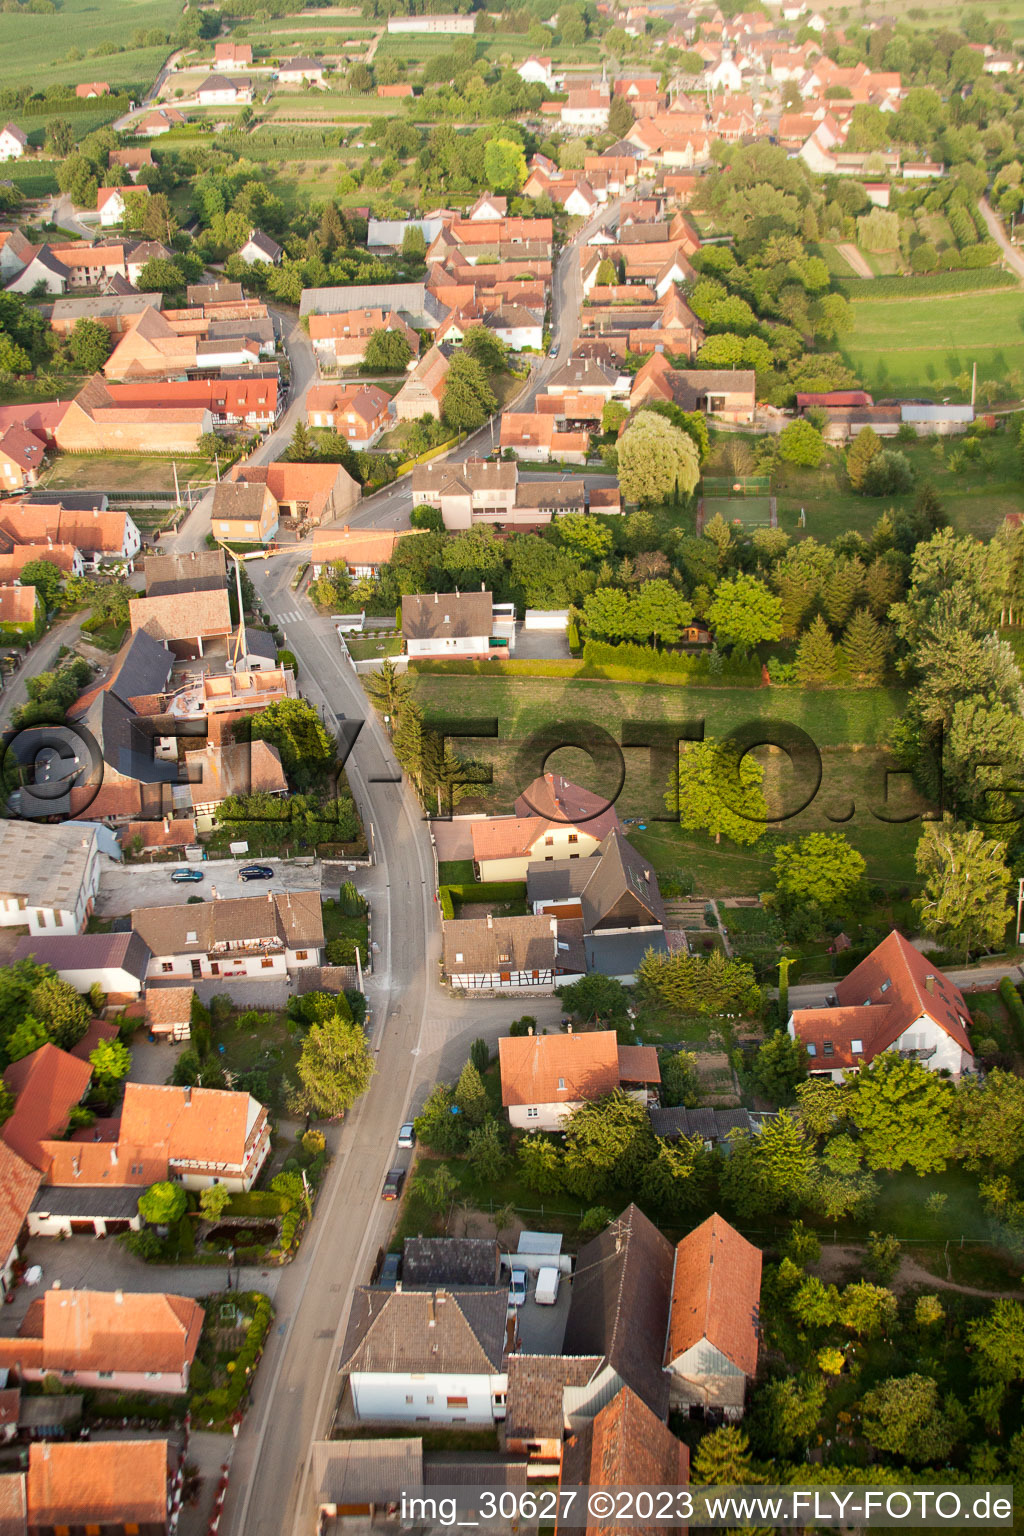 Wintzenbach im Bundesland Bas-Rhin, Frankreich aus der Drohnenperspektive